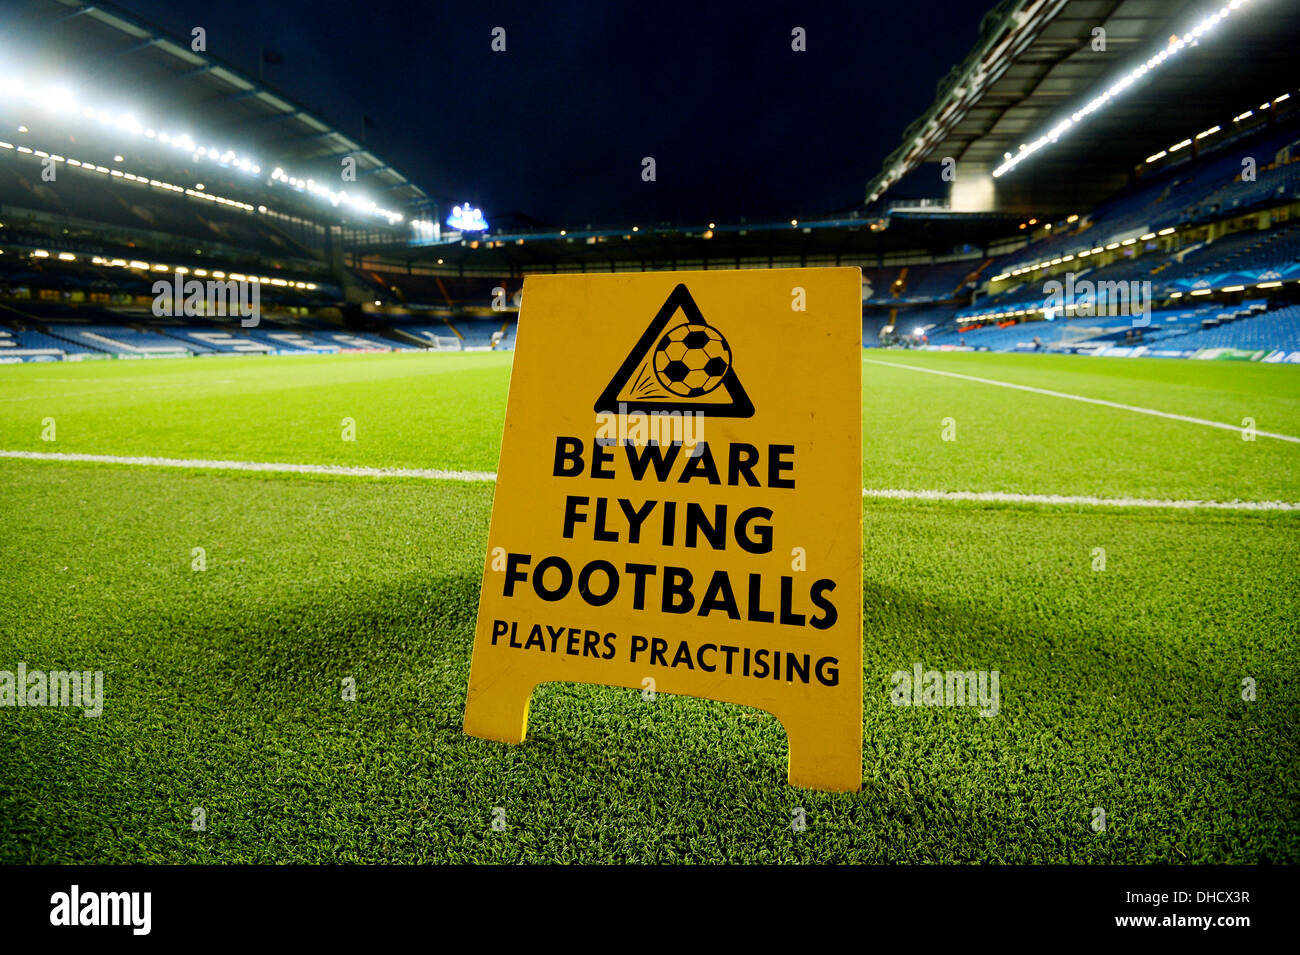 Eine Ansicht der Stamford Bridge, Heimat von Chelsea Football Club mit einer schwarzen Brett Warnung des Fliegens Fußbälle Stockfoto